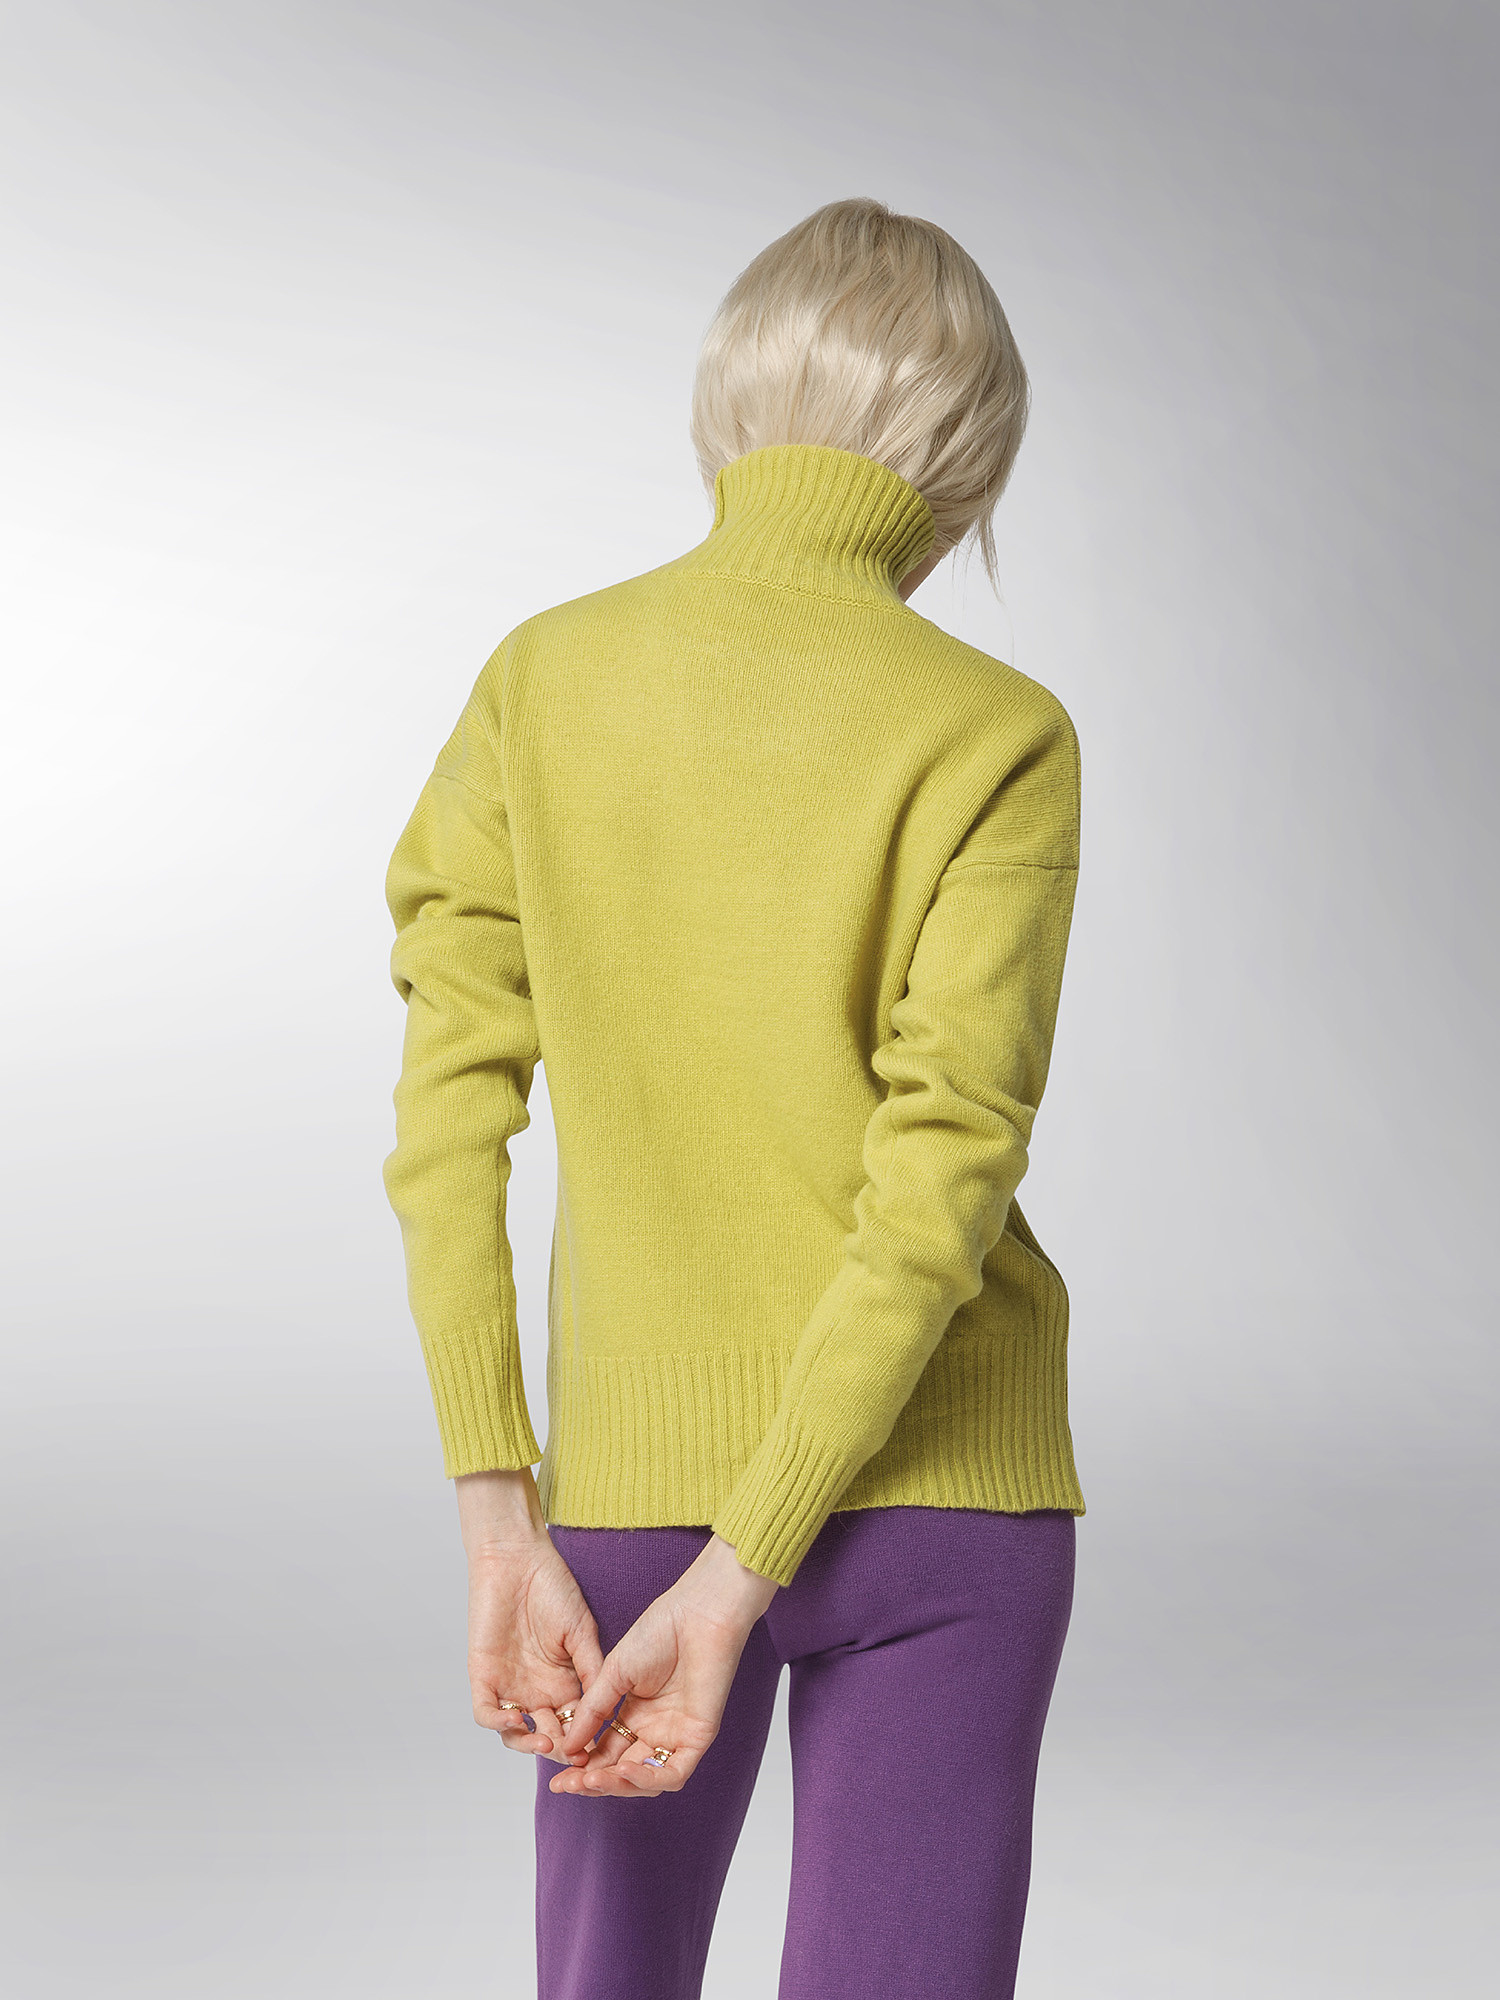 K Collection - Turtleneck sweater, Acid Green, large image number 5